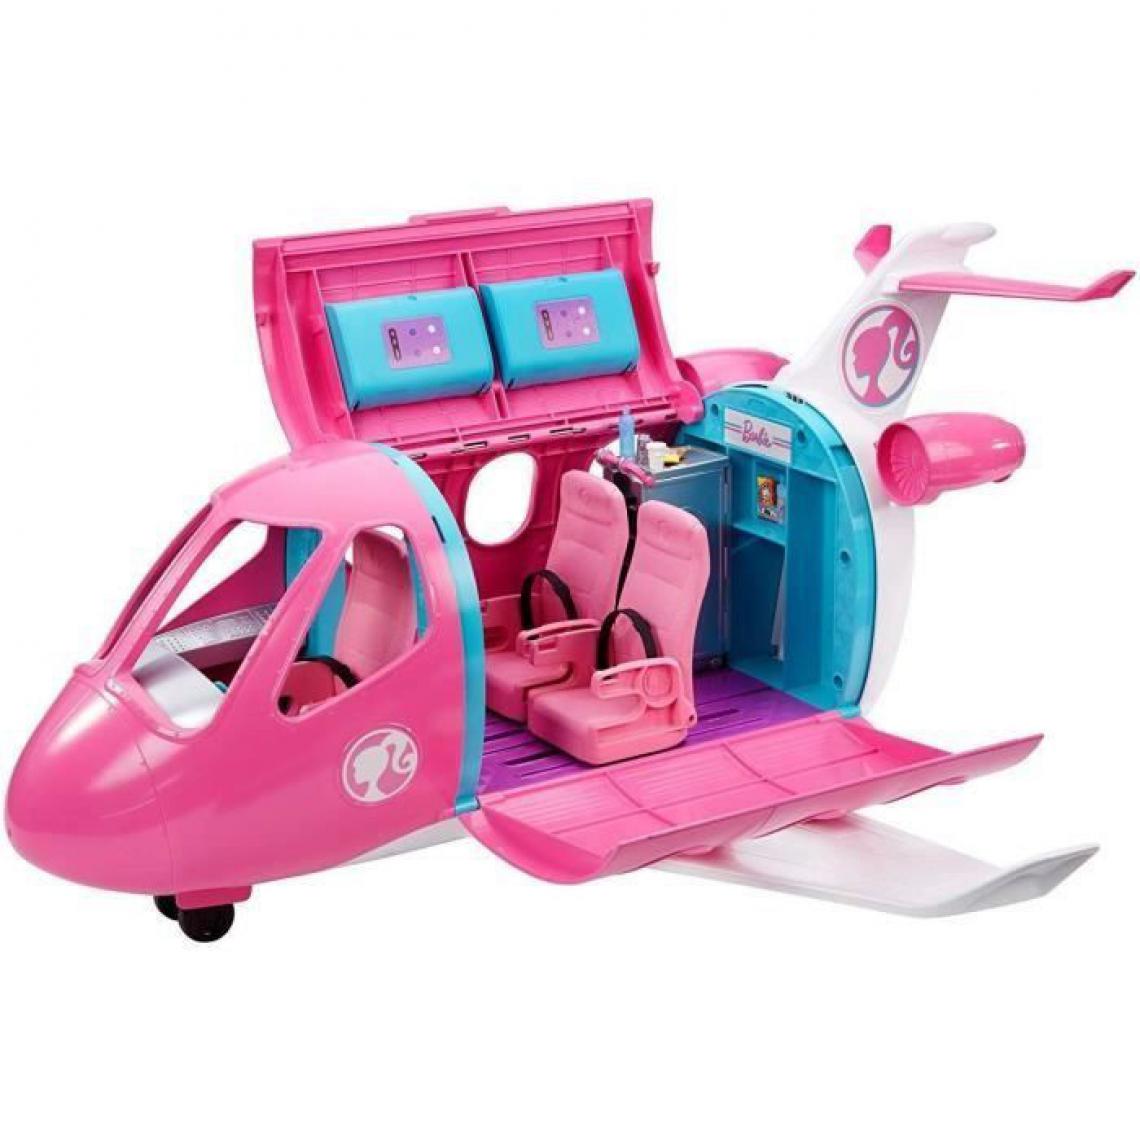 Barbie - BARBIE L'Avion de Reve avec mobilier, rangements et accessoires - 58 cm - Poupées mannequins